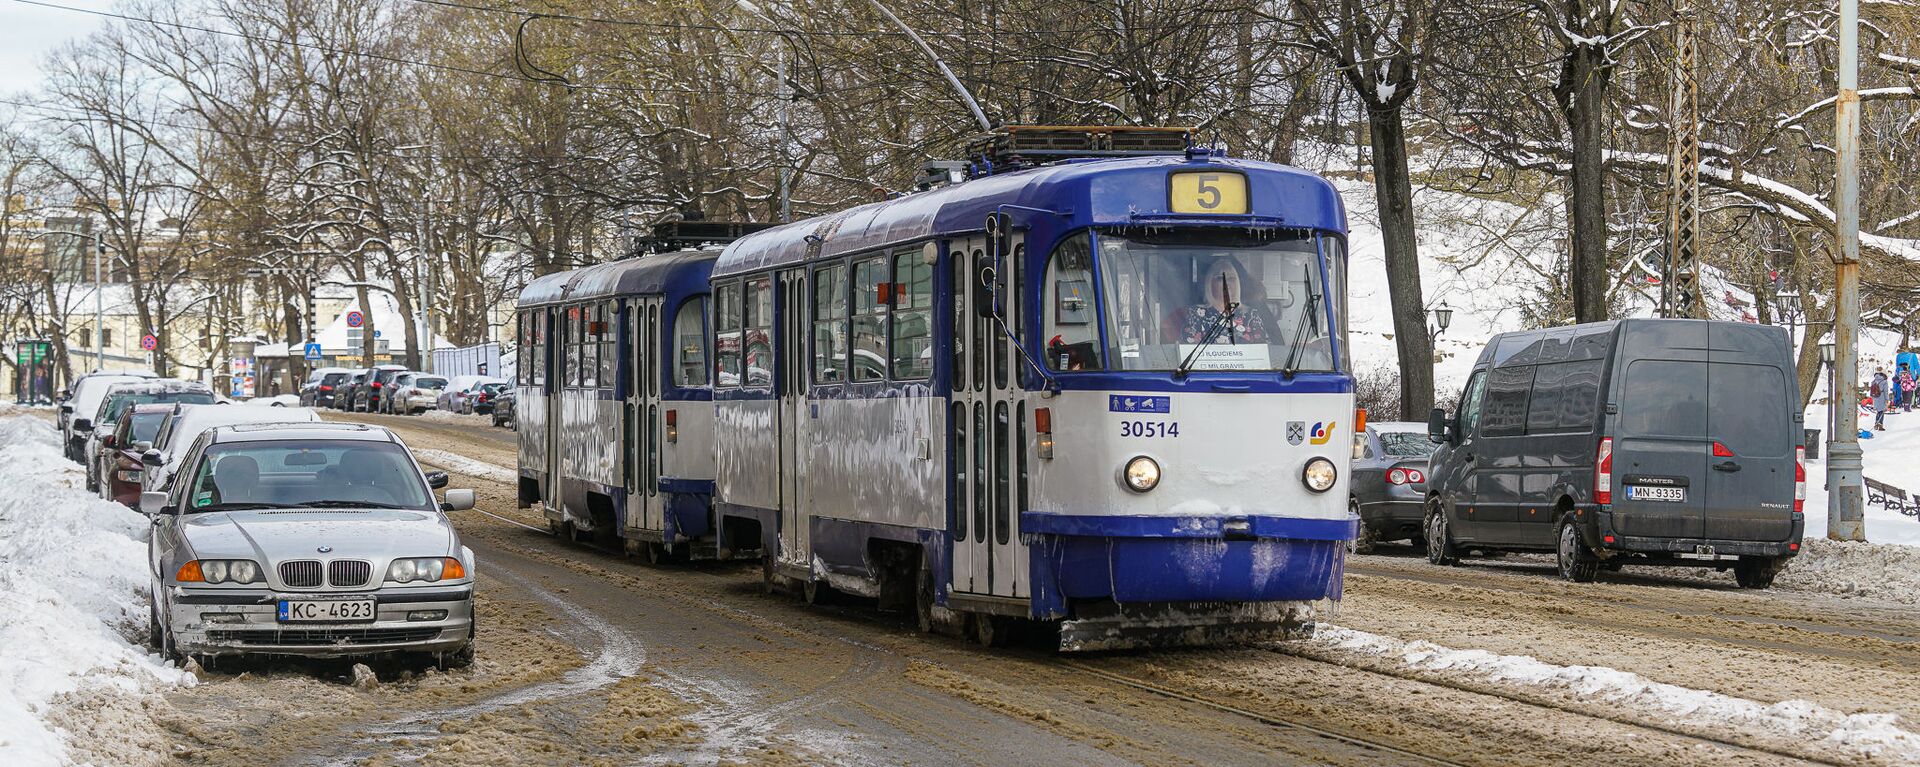 Трамвай зимой в Риге - Sputnik Латвия, 1920, 11.03.2021